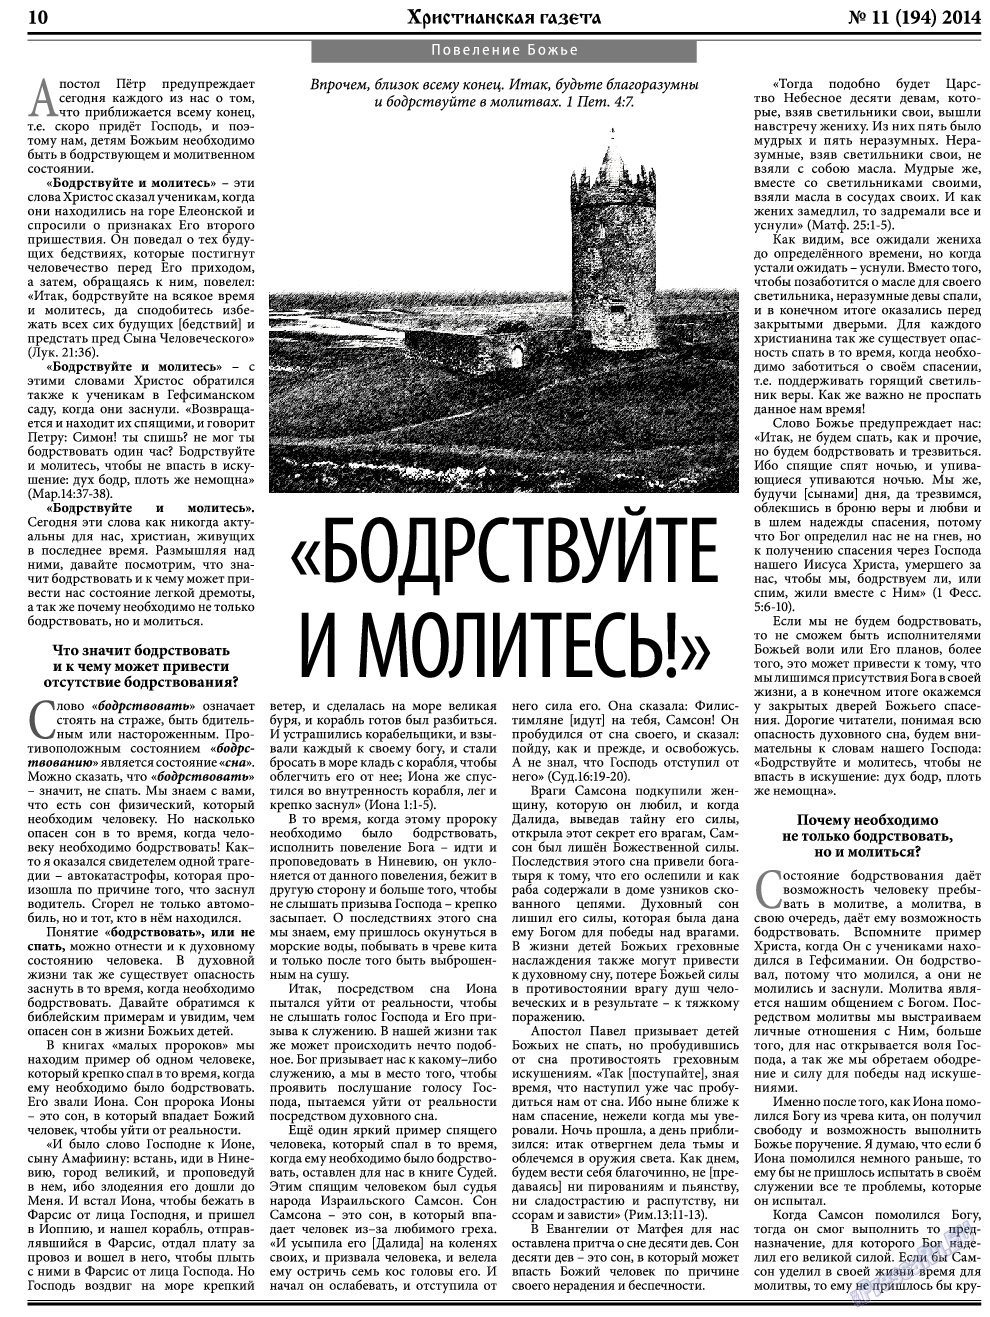 Христианская газета, газета. 2014 №11 стр.10